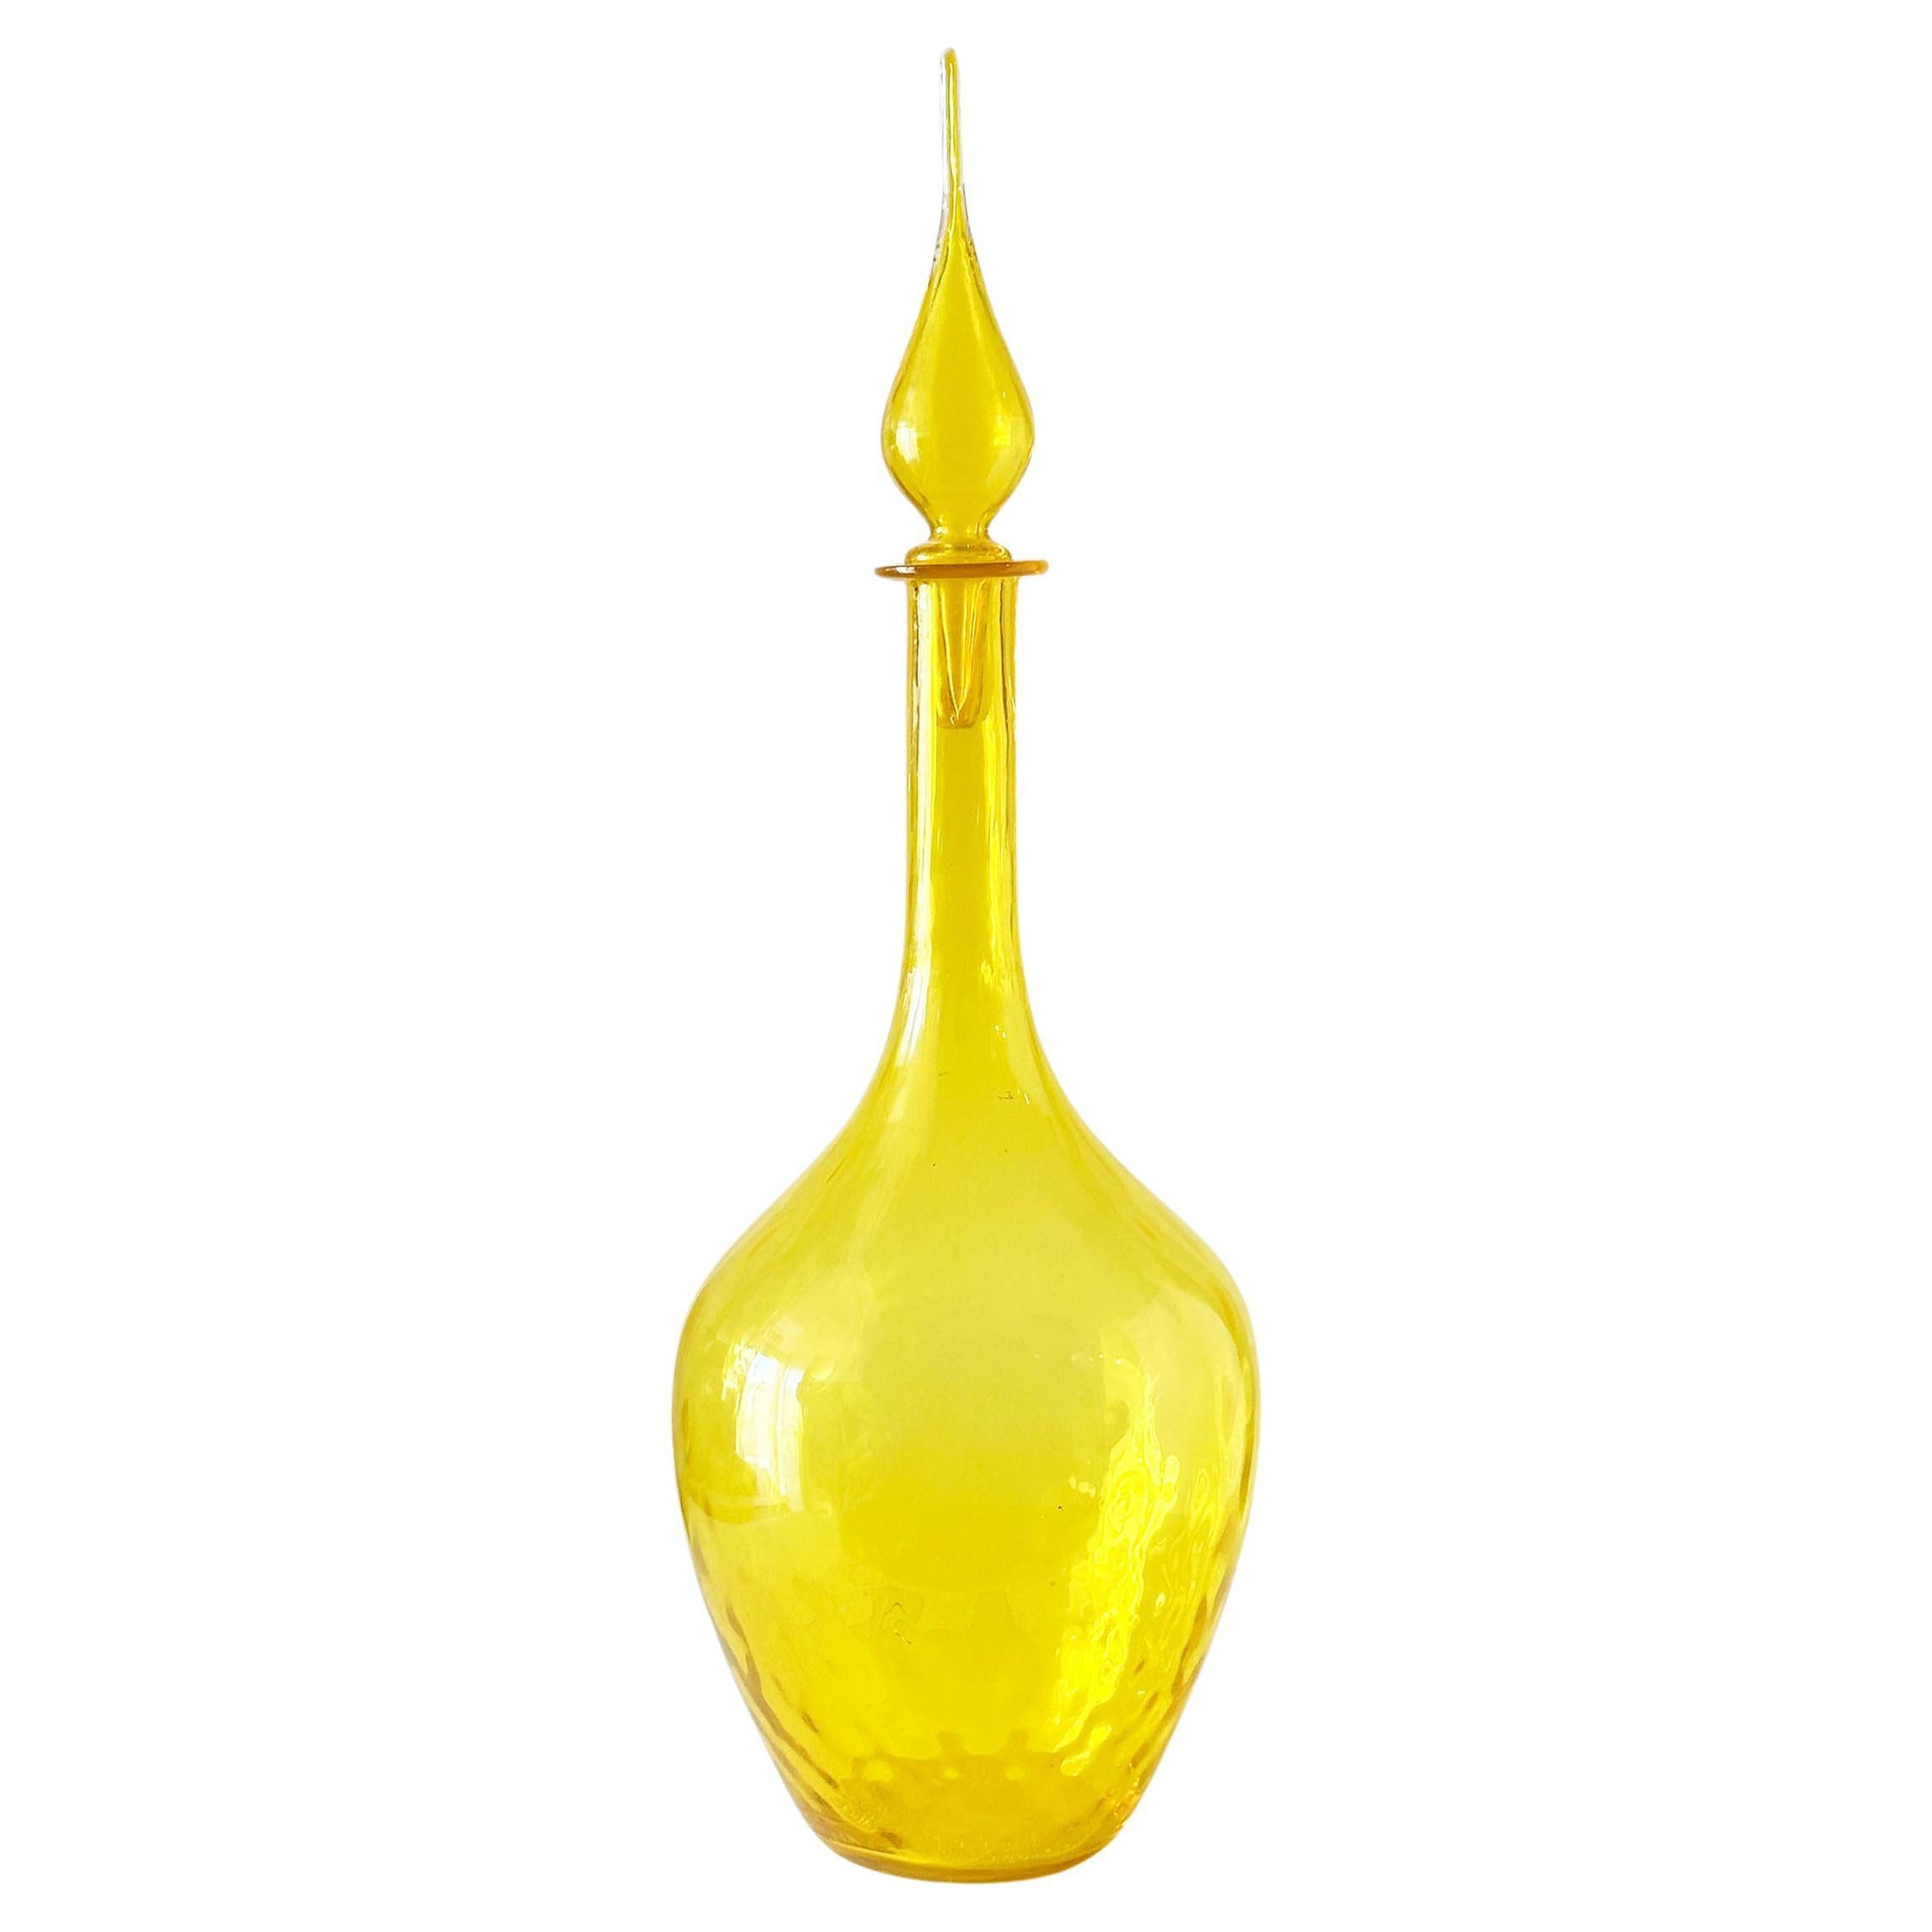 Blenko Lemon Yellow Optical Art Glass Flame Stopper Decanter